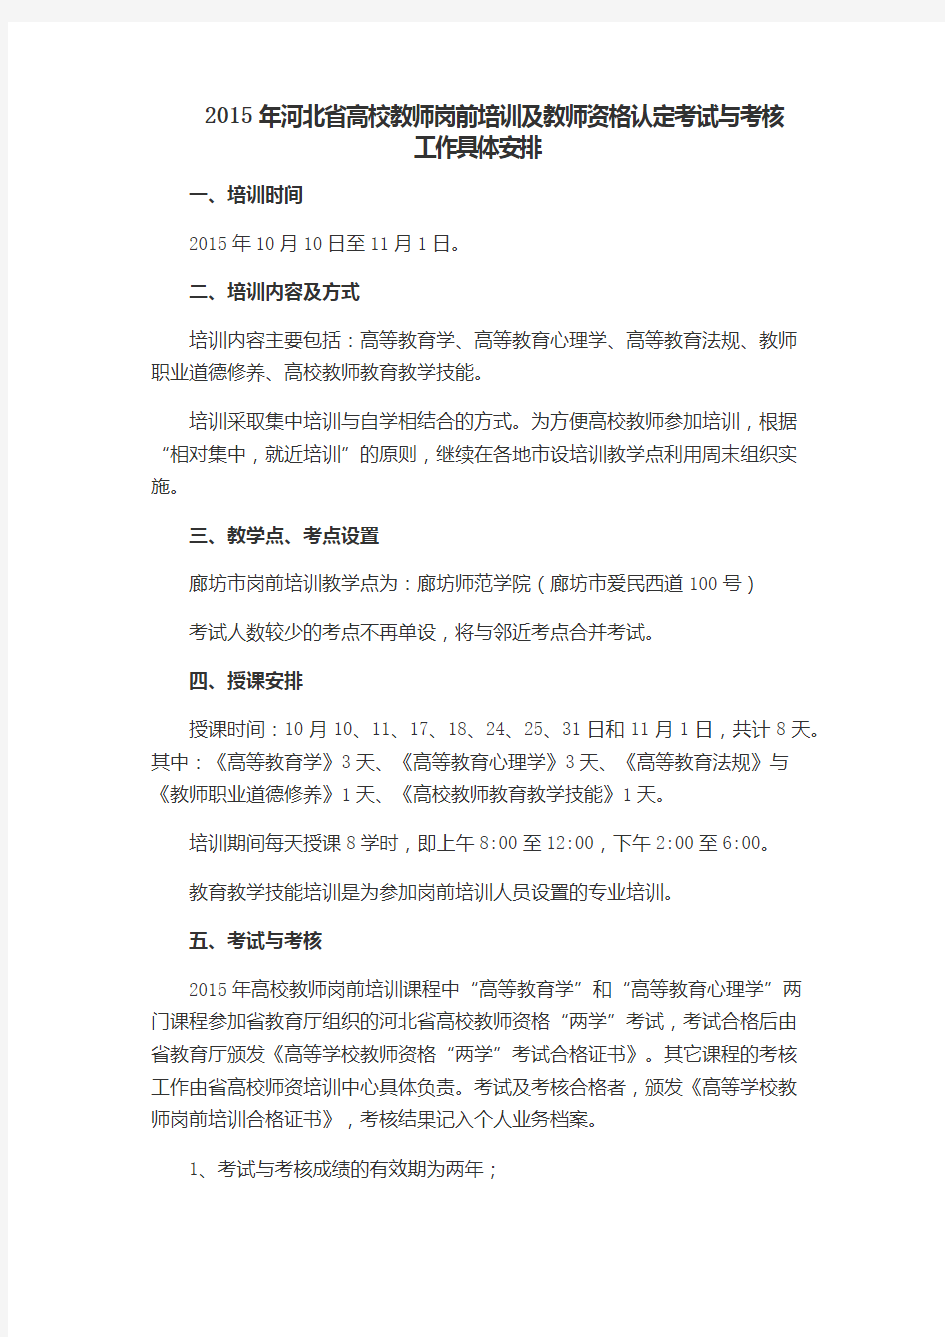 2015年河北省高校教师岗前培训及教师资格认定考试与考核工